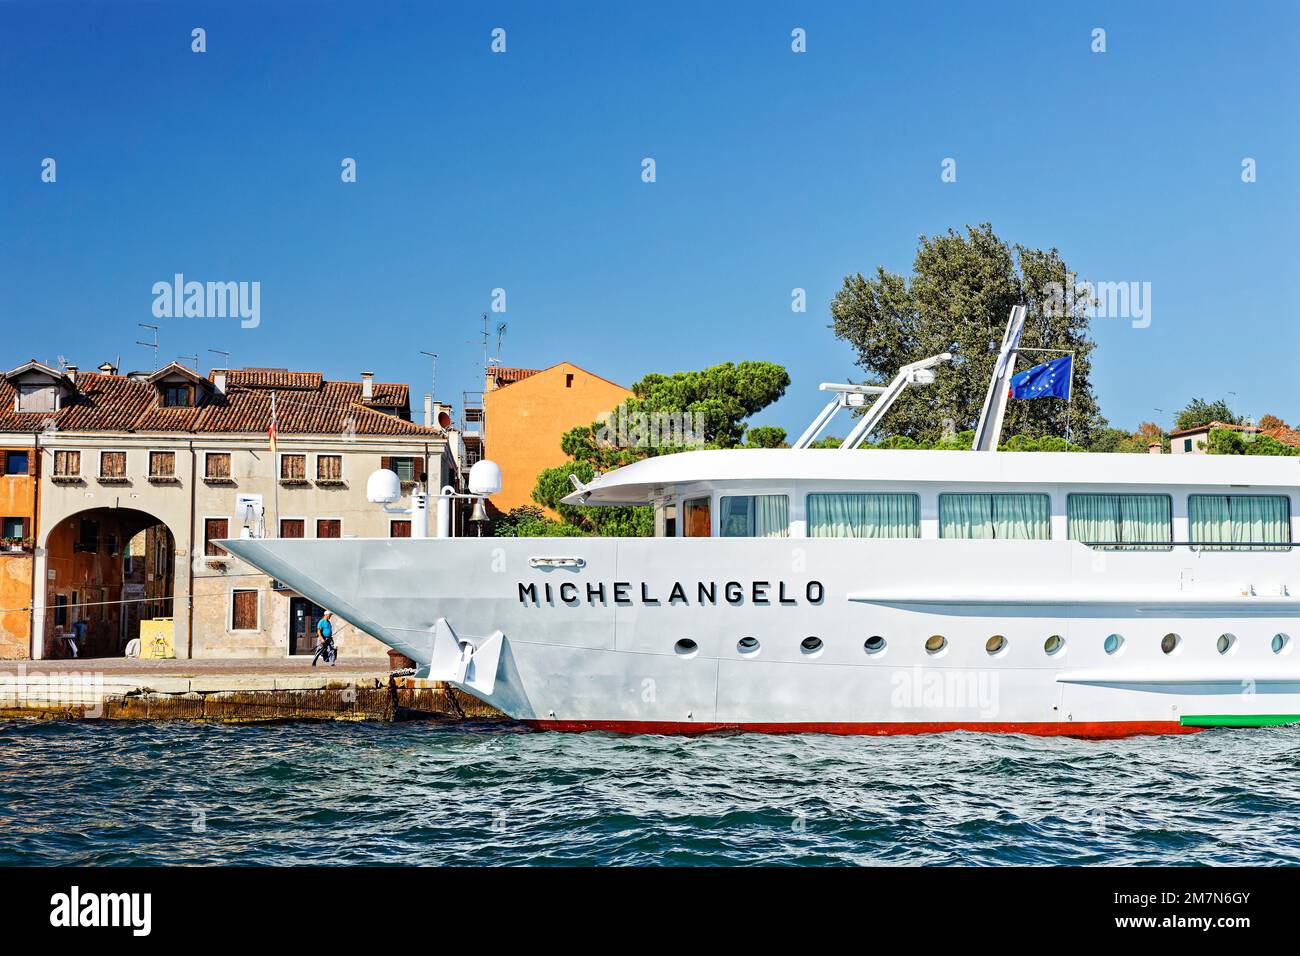 Das Flussschiff „Michelangelo“ ist rund um Venedig unterwegs. Hier ist es an einem Kai verankert Stockfoto